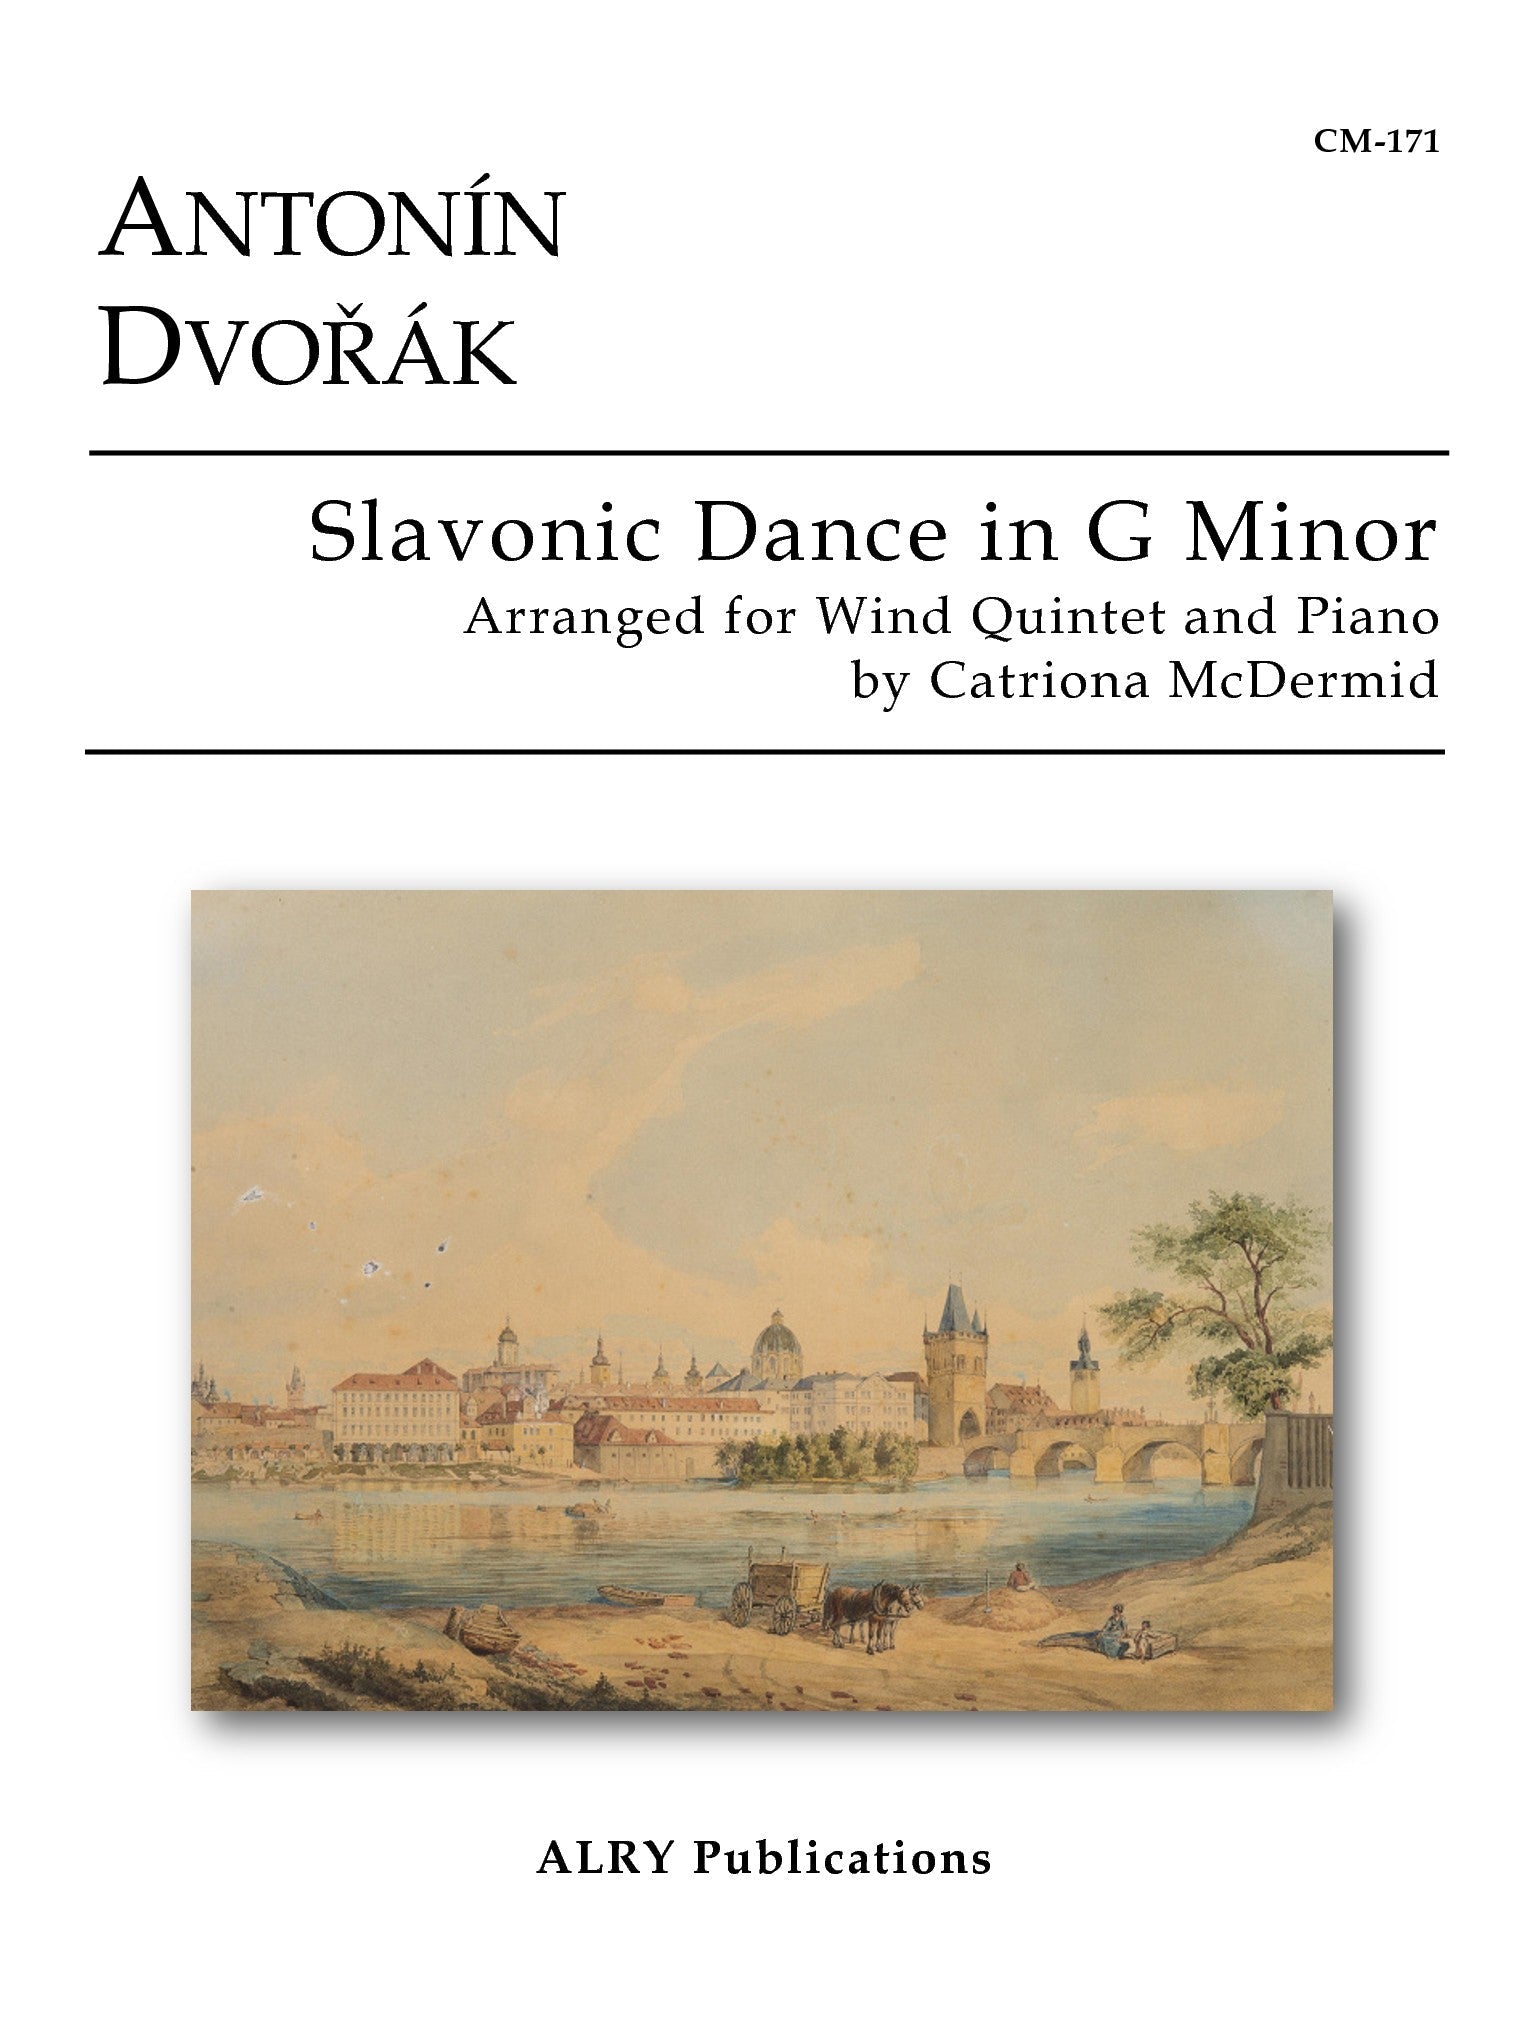 Dvorak ( Catrioma McDermid) - Slavonic Dance in G minor